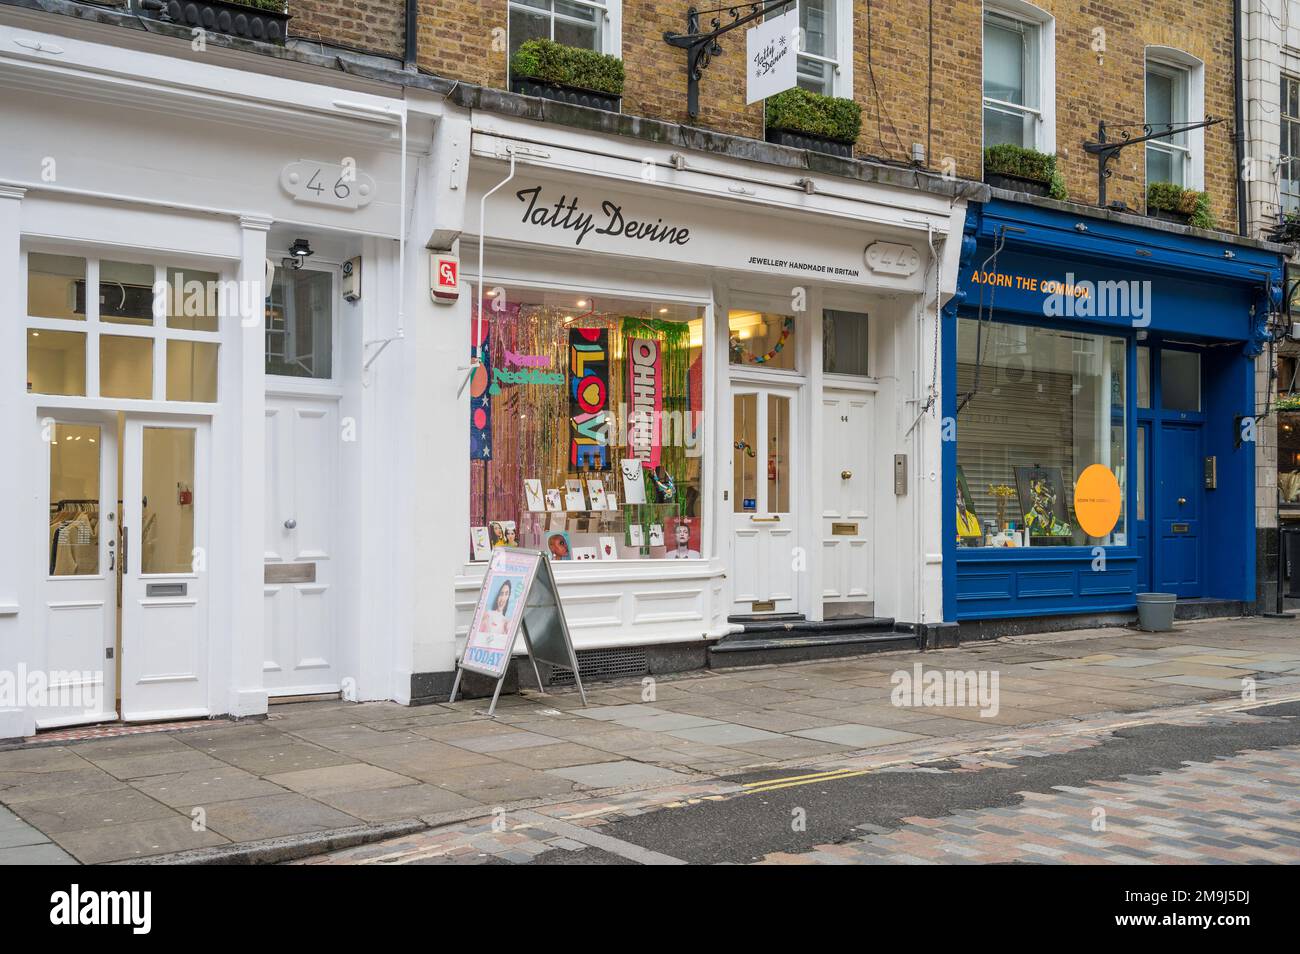 Tatty Devine, une boutique indépendante qui vend des bijoux d'art en perspex, en bois et en tissu. Monmouth Street, Seven Dials, Londres, Angleterre, Royaume-Uni Banque D'Images